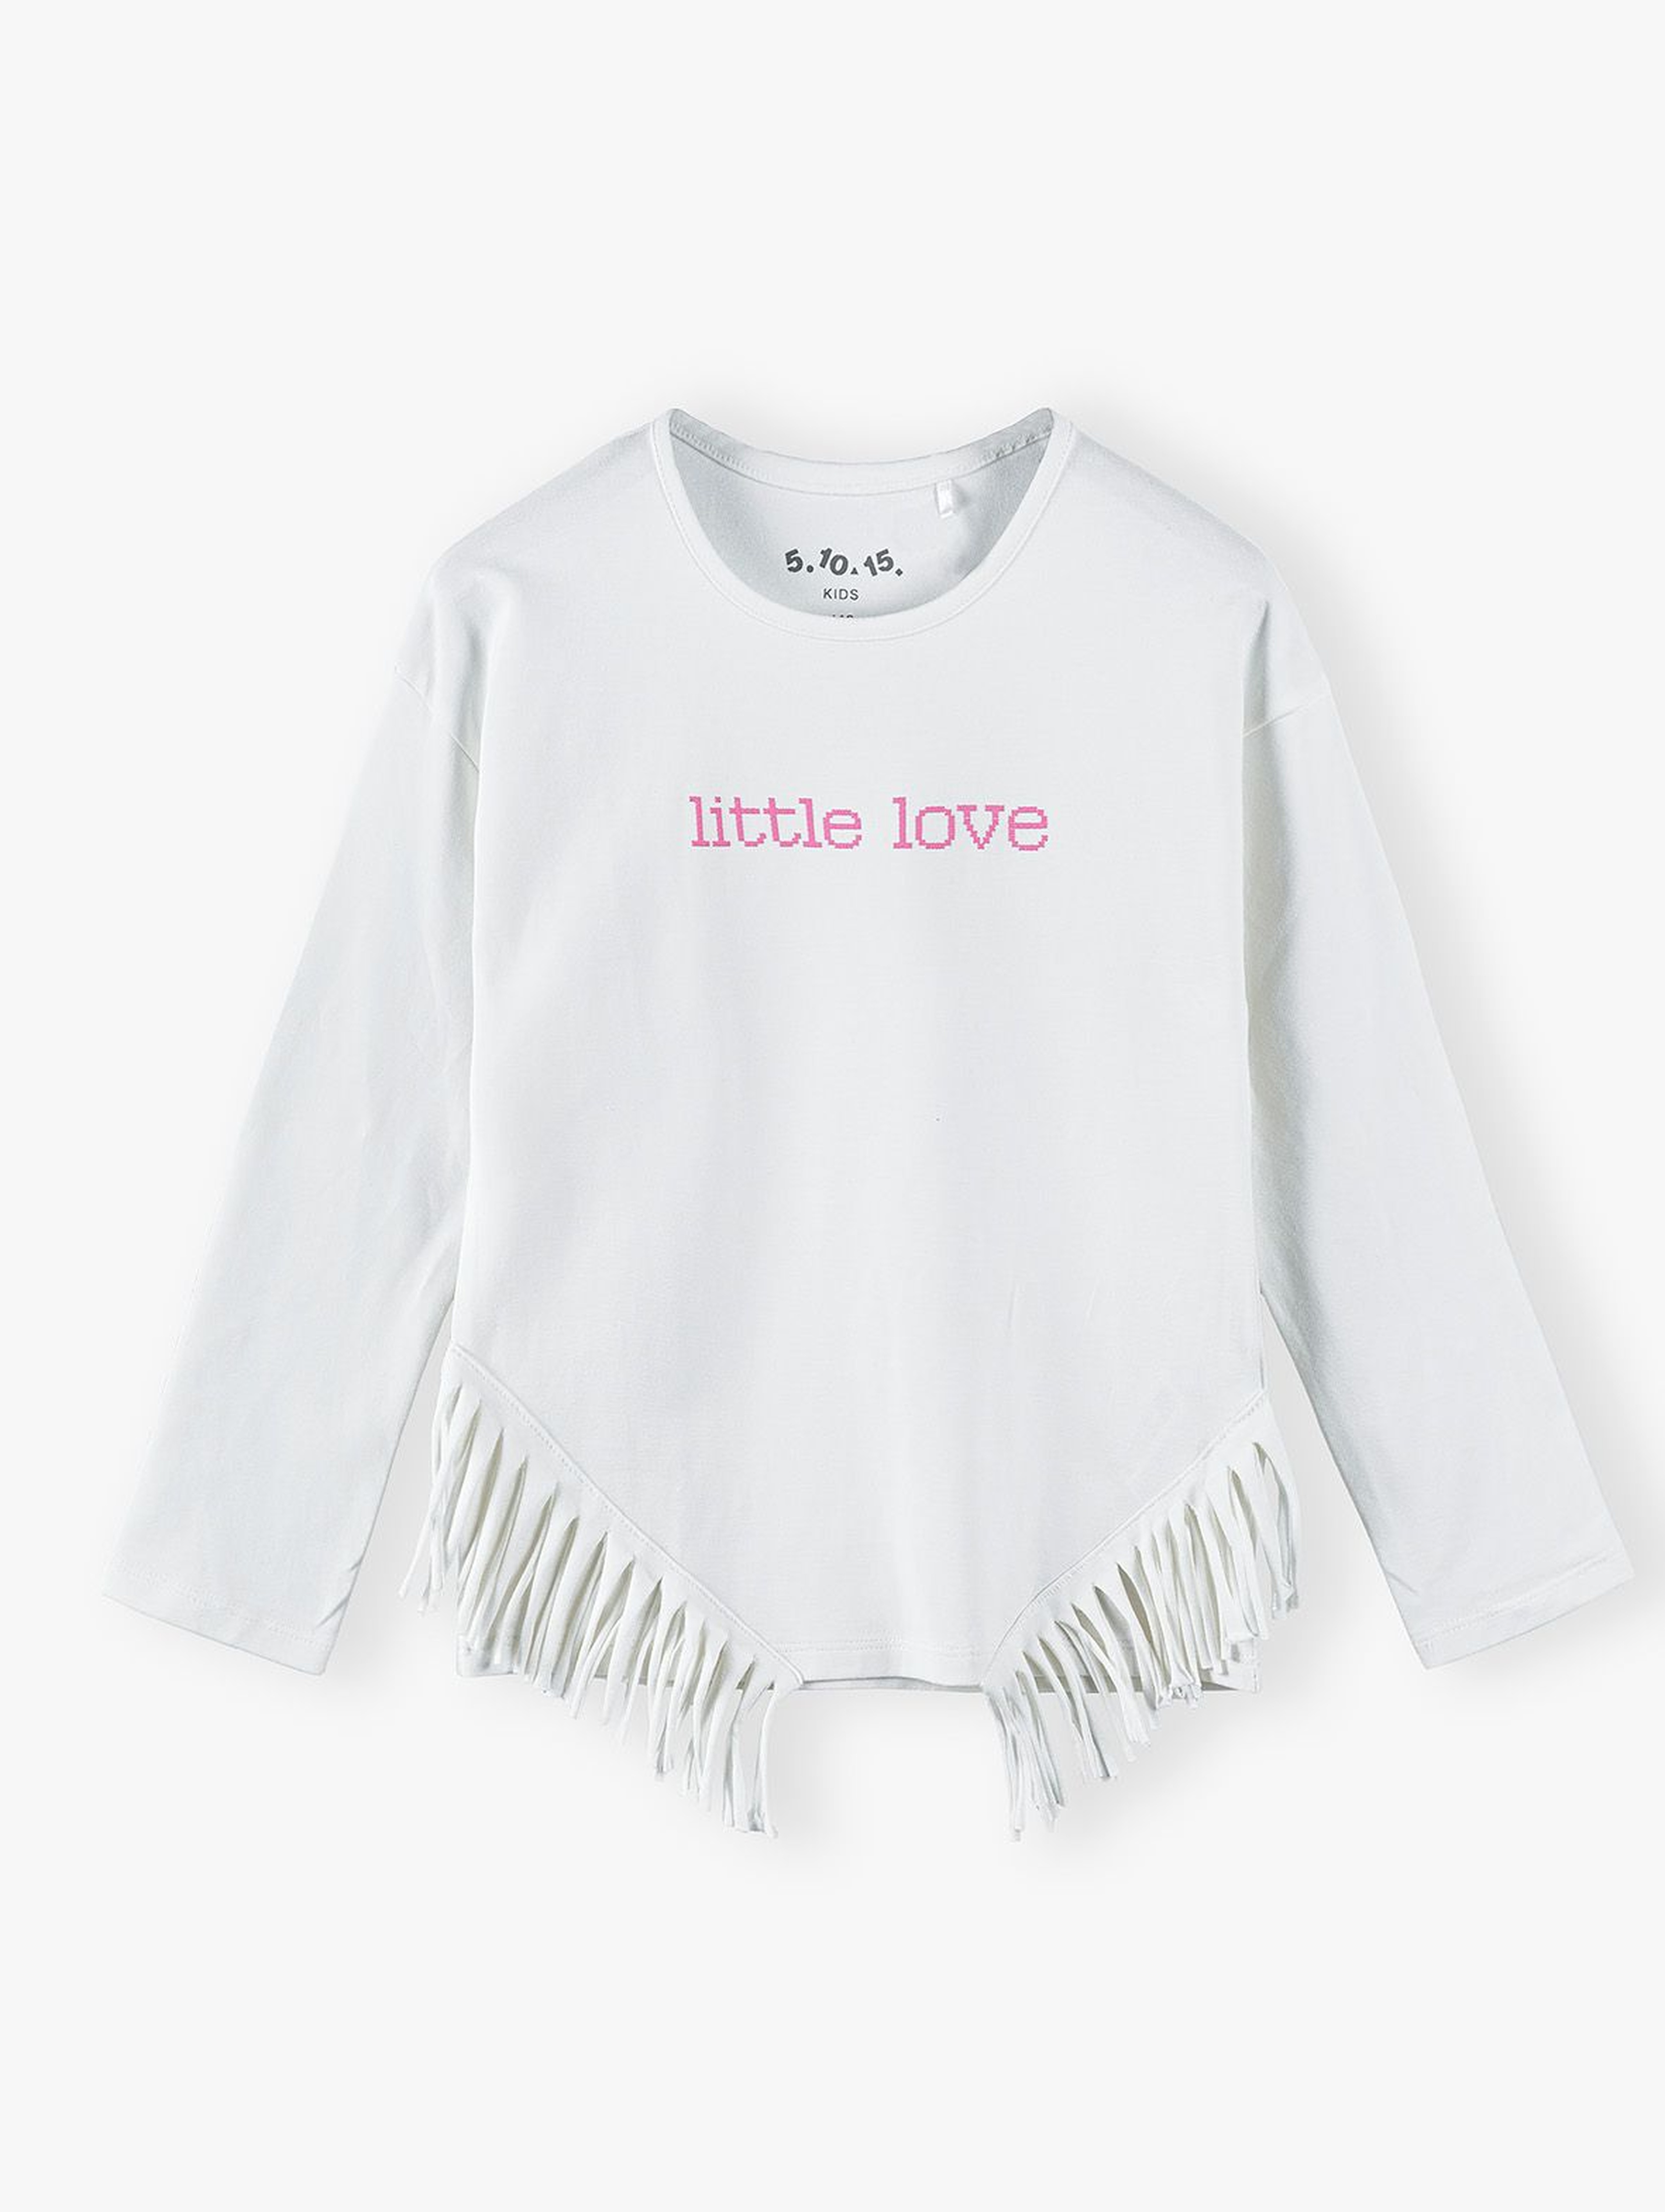 Bawełniana beżowa bluzka dziewczęca z napisem Little Love